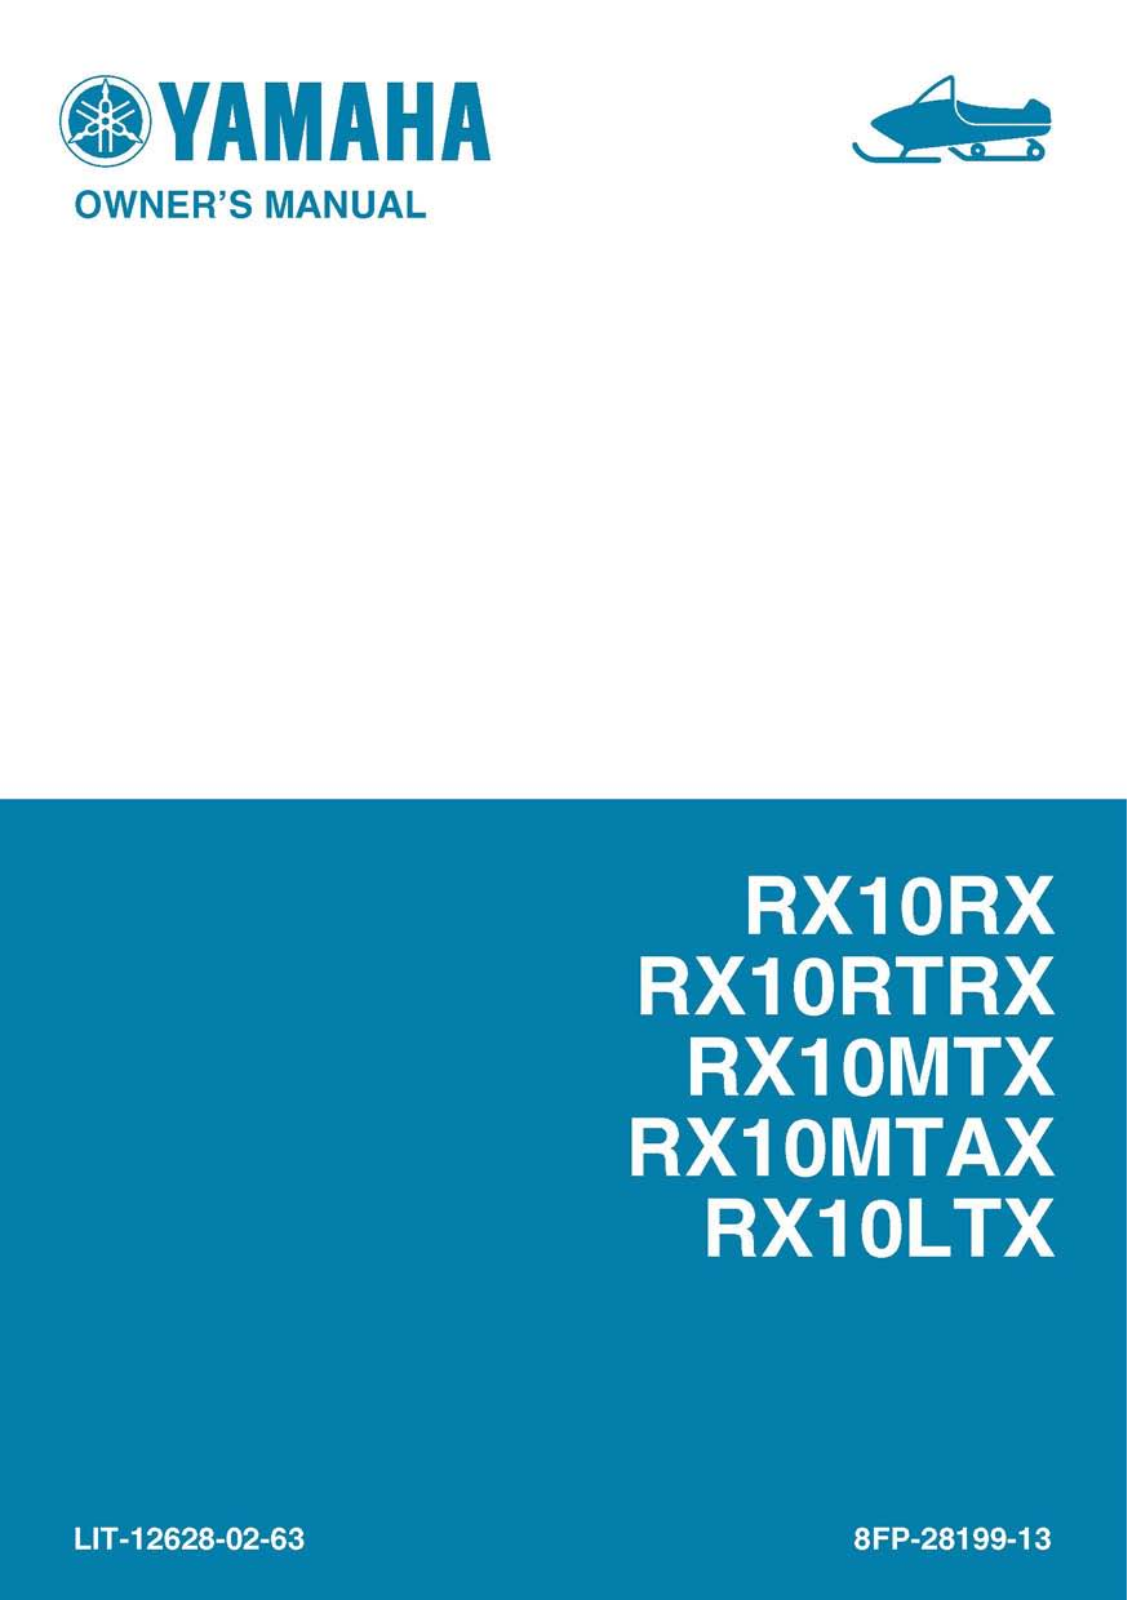 Yamaha RX10RX, RX10RTRX, RX10MTX, RX10MTAX, RX10LTX Manual